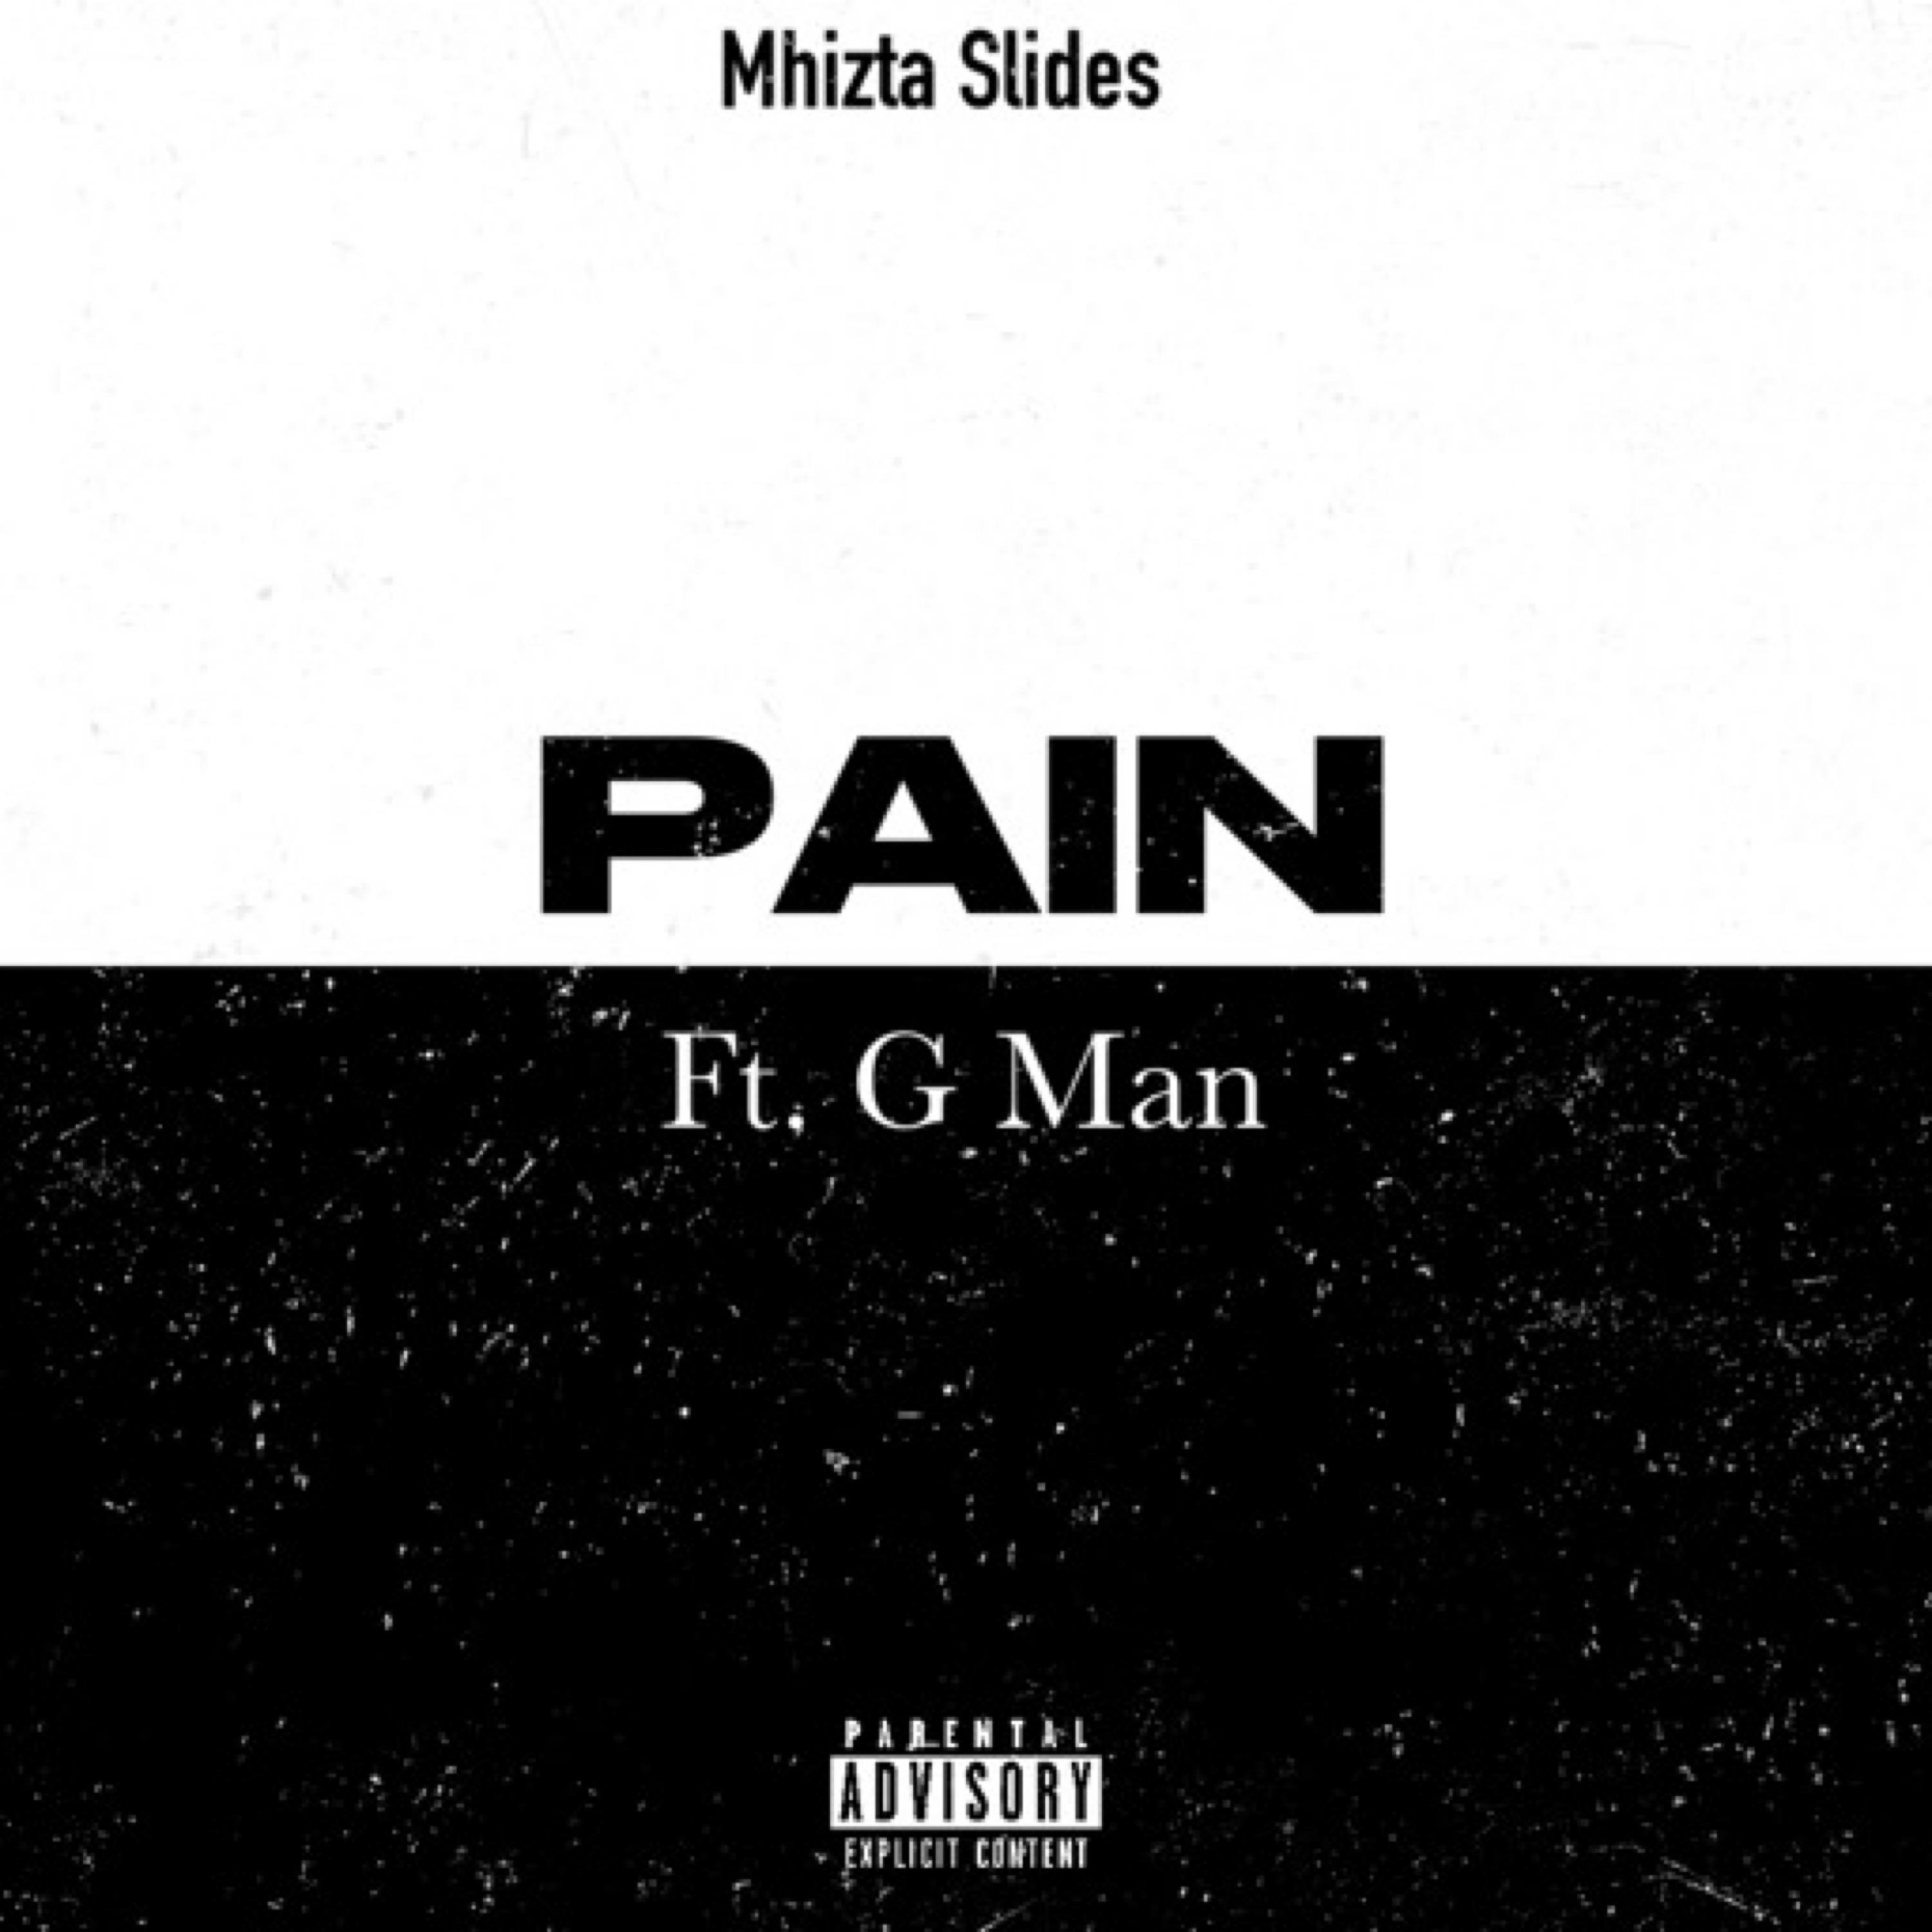 Mhizta Slides - Pain (feat. G man)